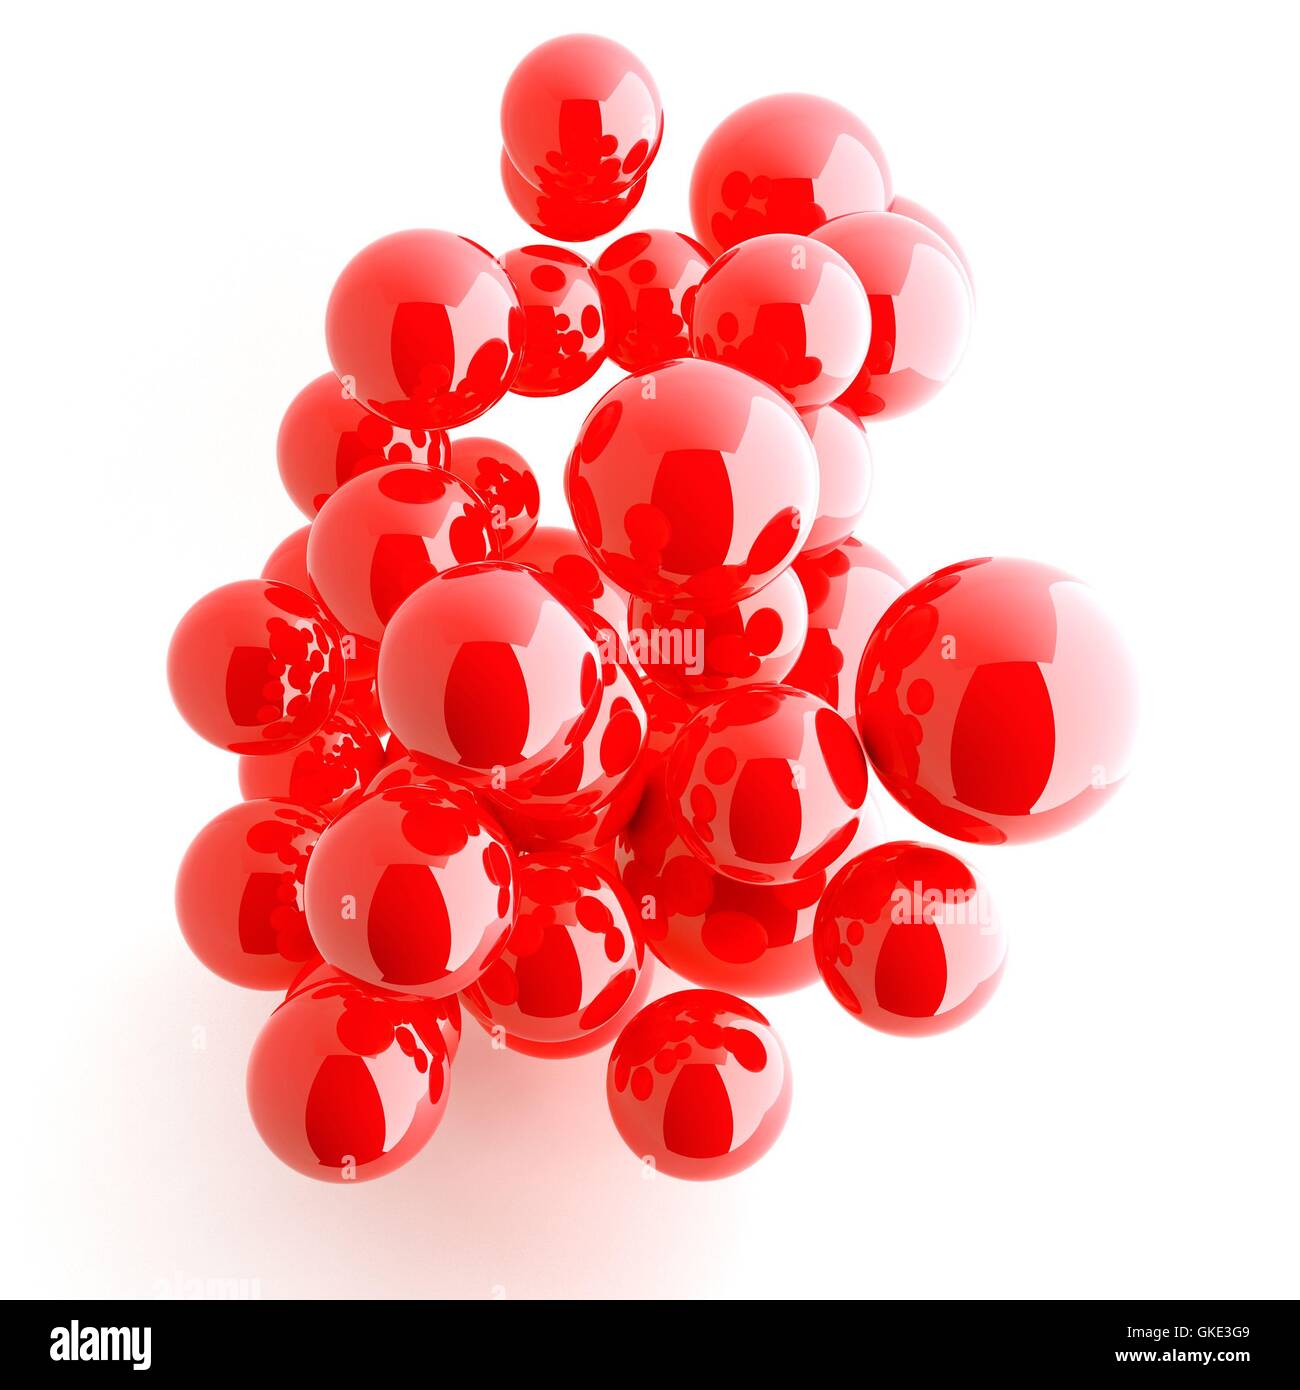 red shiny balls Stock Photo